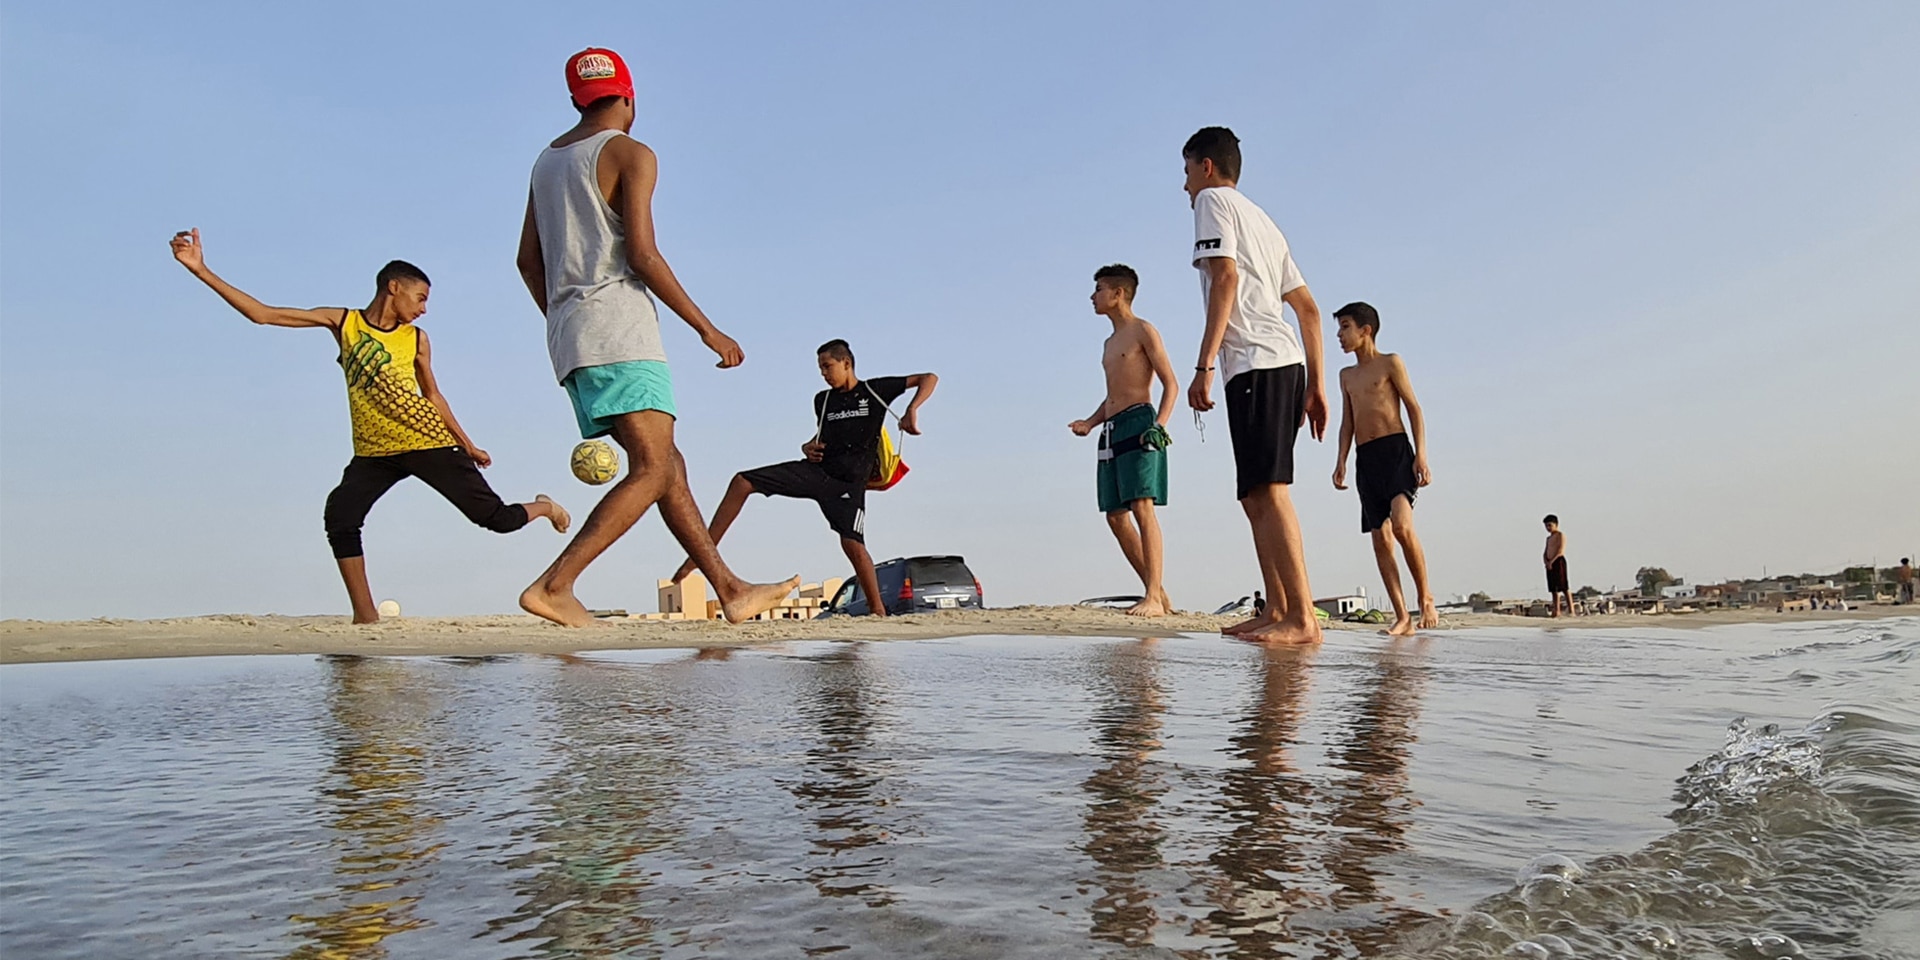 Junge Leute spielen Fussball an einem Strand in der Stadt Garabulli, rund 70 km von der Hauptstadt Tripolis entfernt.